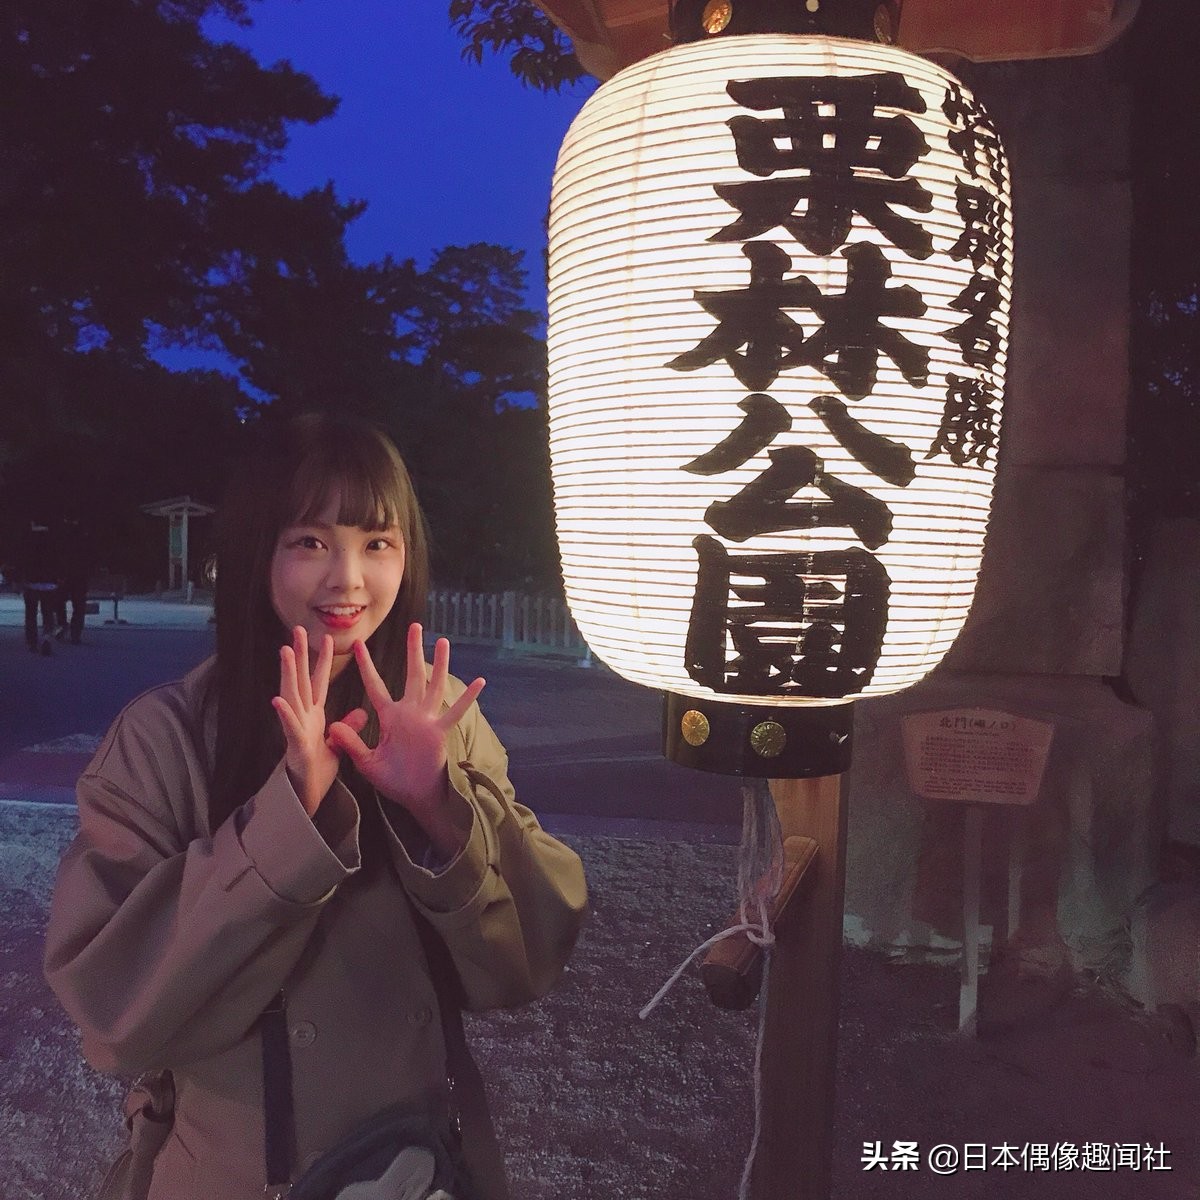 日本妹子福田朱里 每年都会和家人一起到高松市的栗林公园赏花 搜狐大视野 搜狐新闻